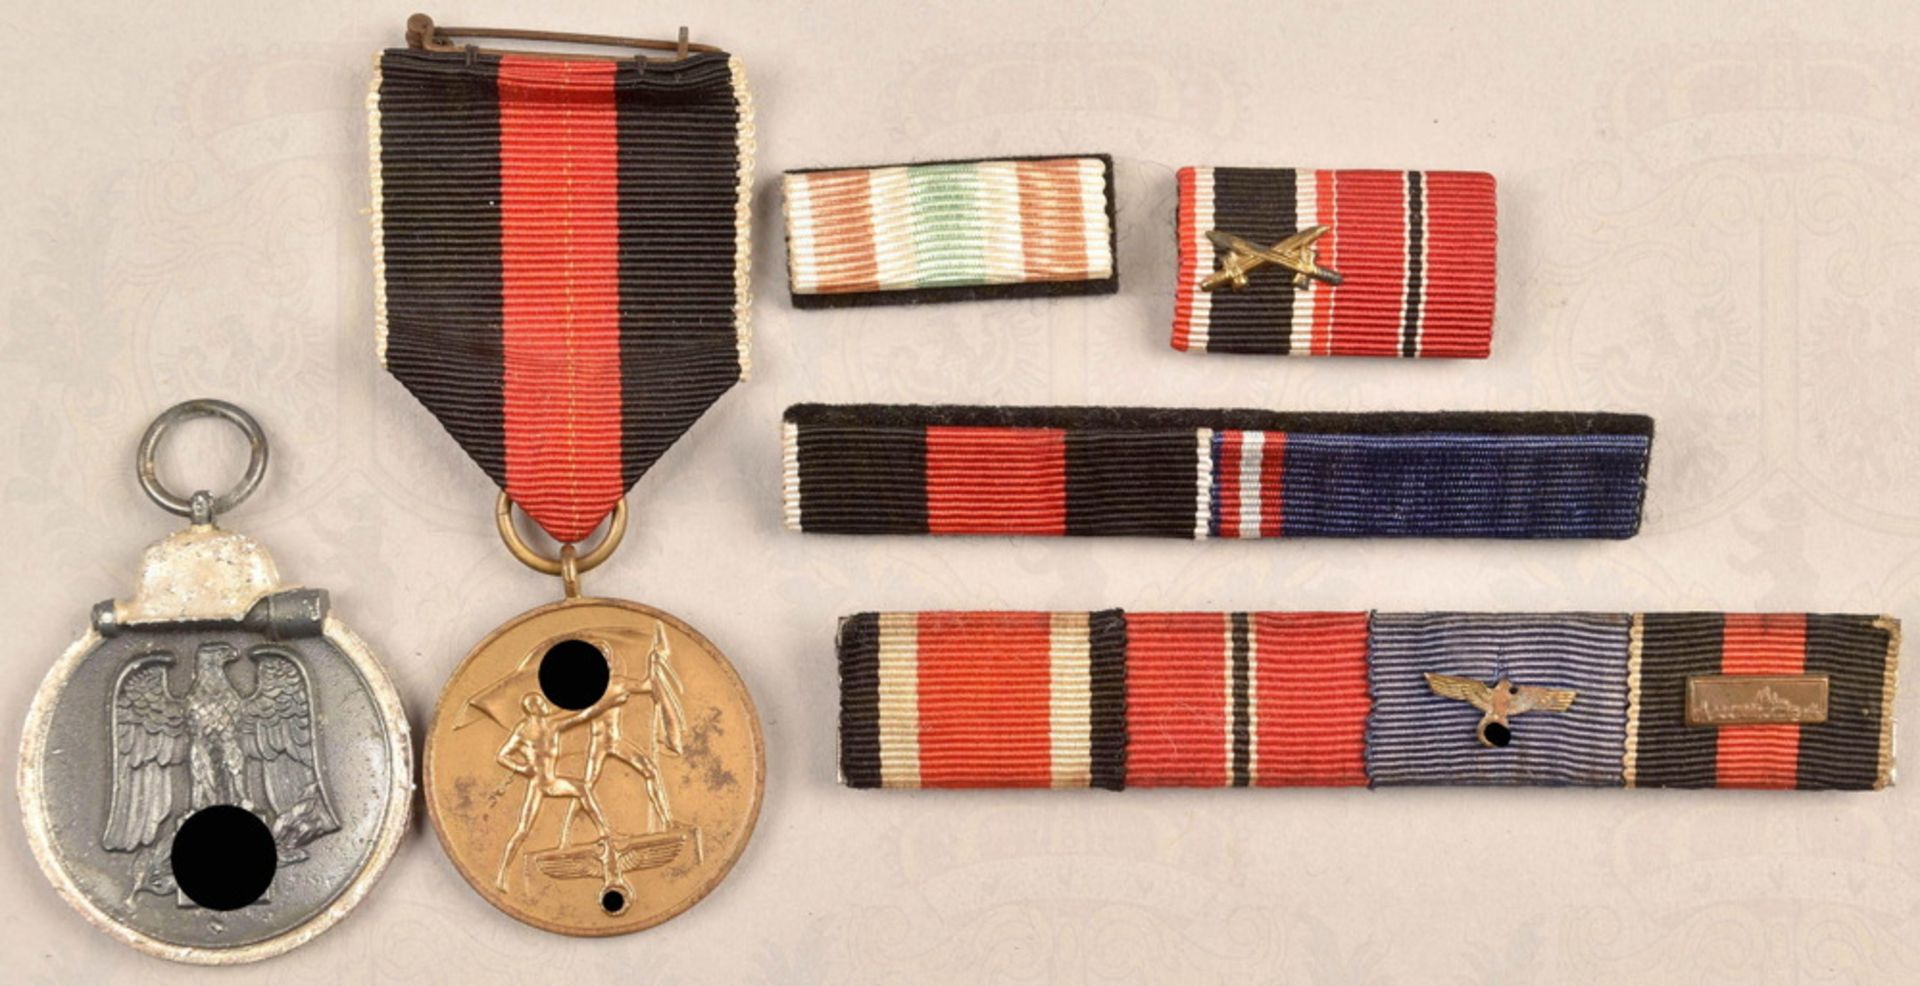 2 Ehrenzeichen Wehrmacht, 4 Feldordenspangen